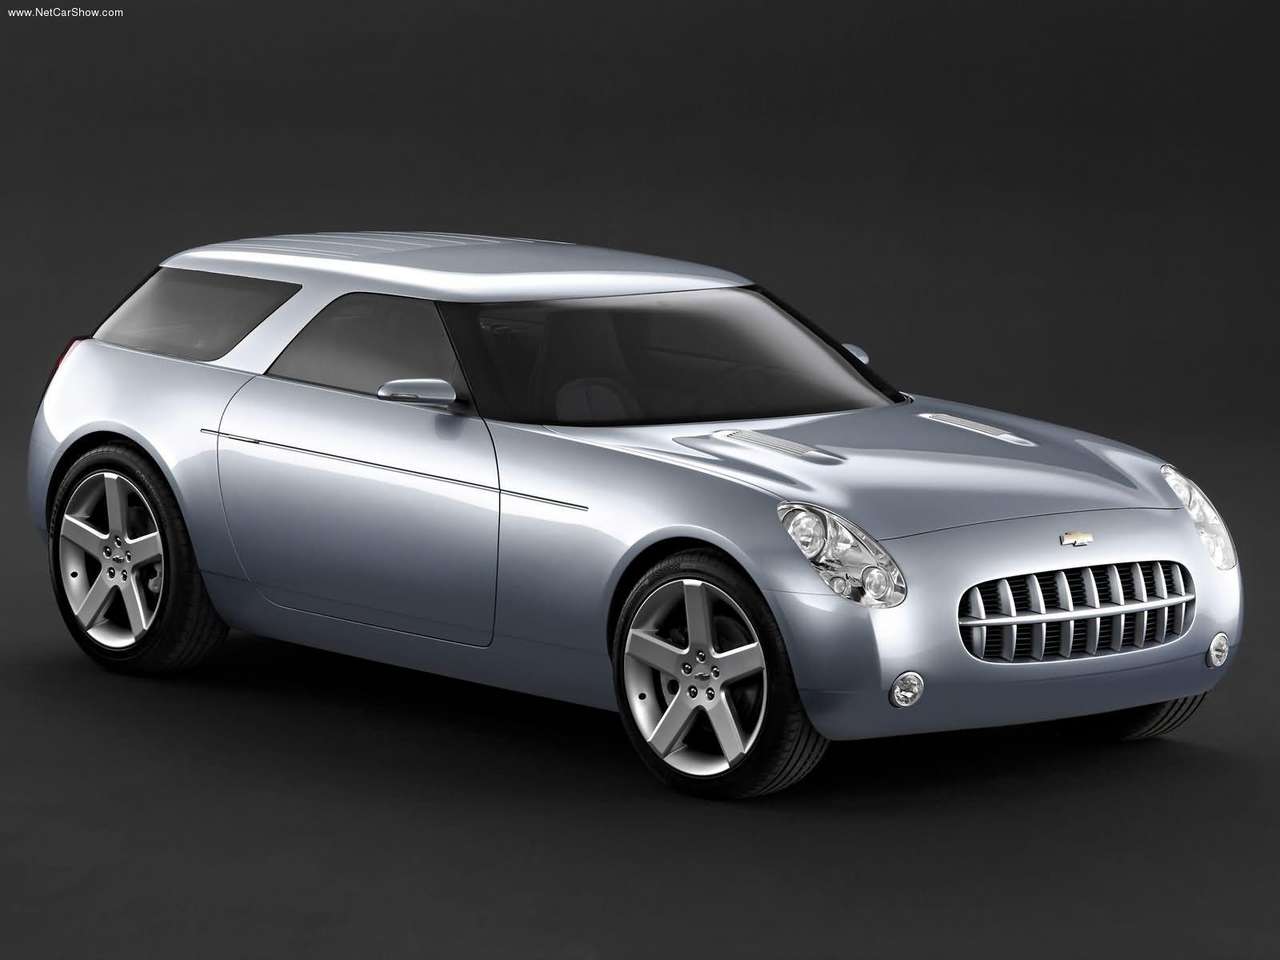 ... - Populaire français d'automobiles: 2004 Chevrolet Nomad Concept